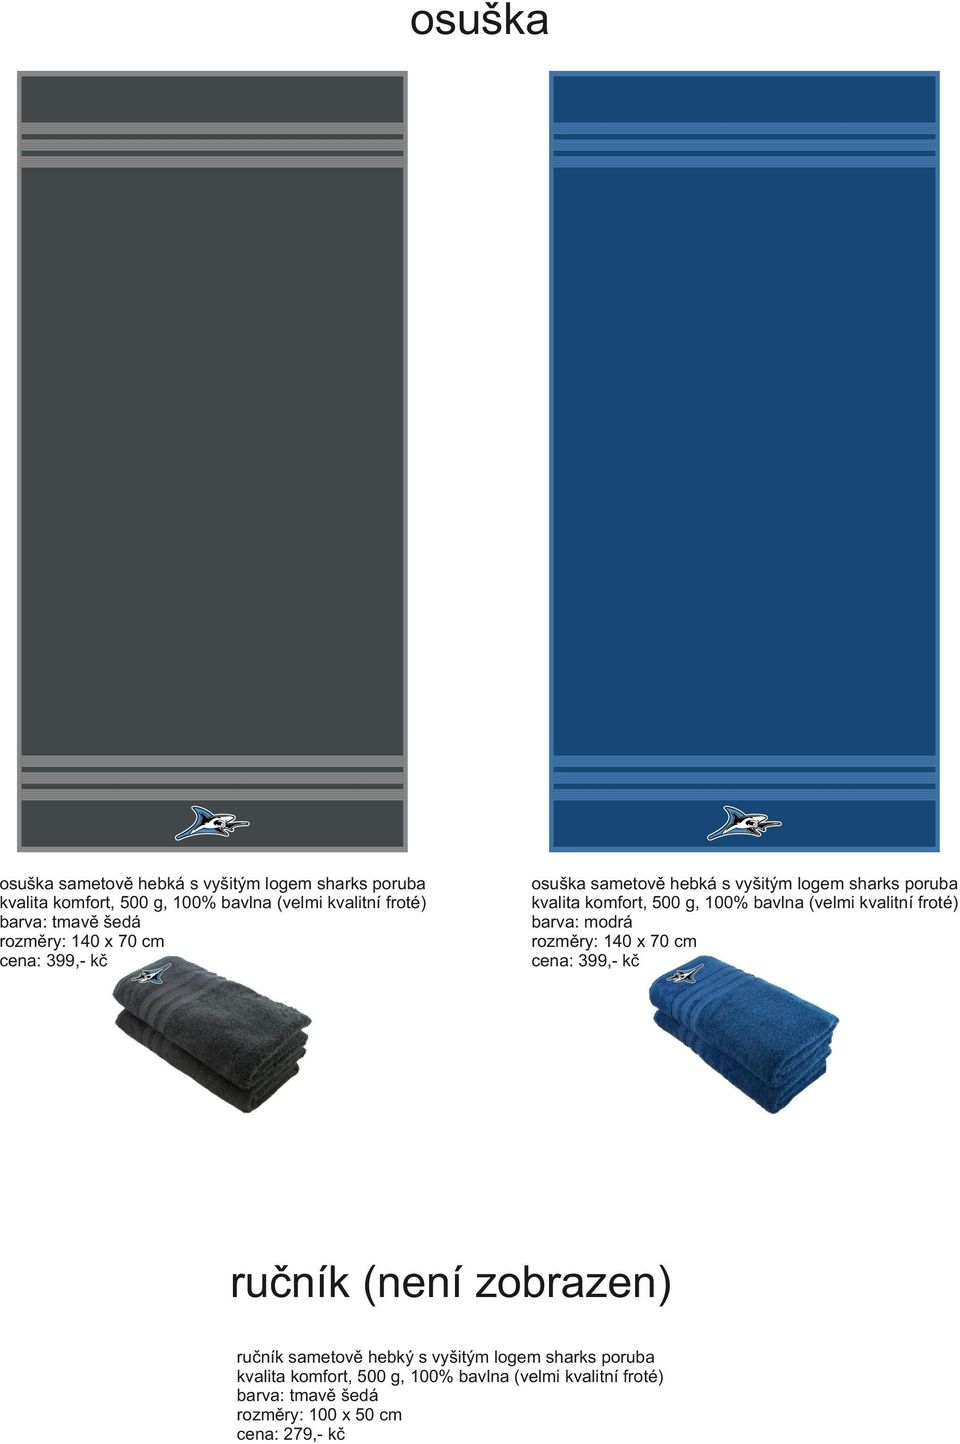 (velmi kvalitní froté) barva: modrá rozměry: 140 x 70 cm cena: 399,- kč ručník (není zobrazen) ručník sametově hebký s